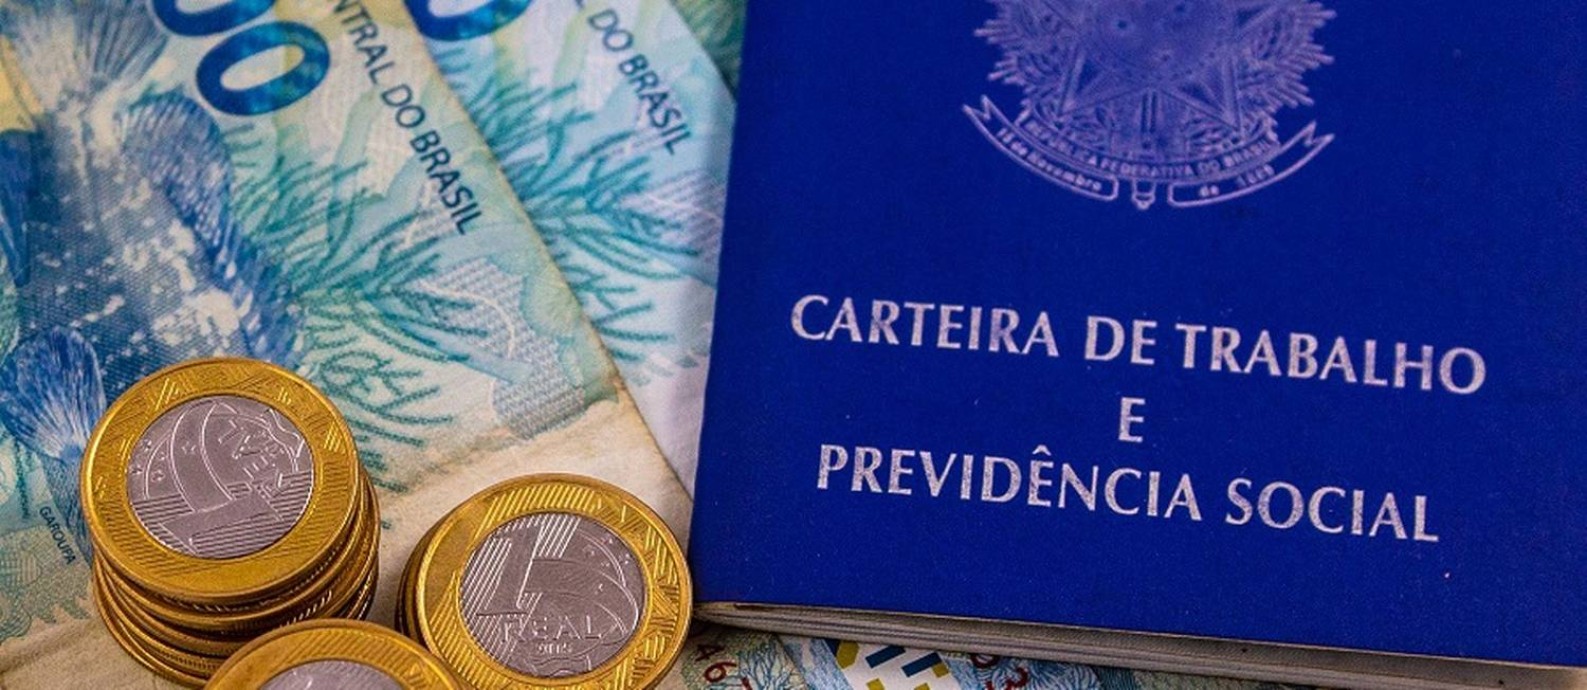 Carteira de trabalho: governo divulga dados de emprego formal no Brasil Foto: CAMILA LIMA/FUTURA PRESS / Agência O Globo